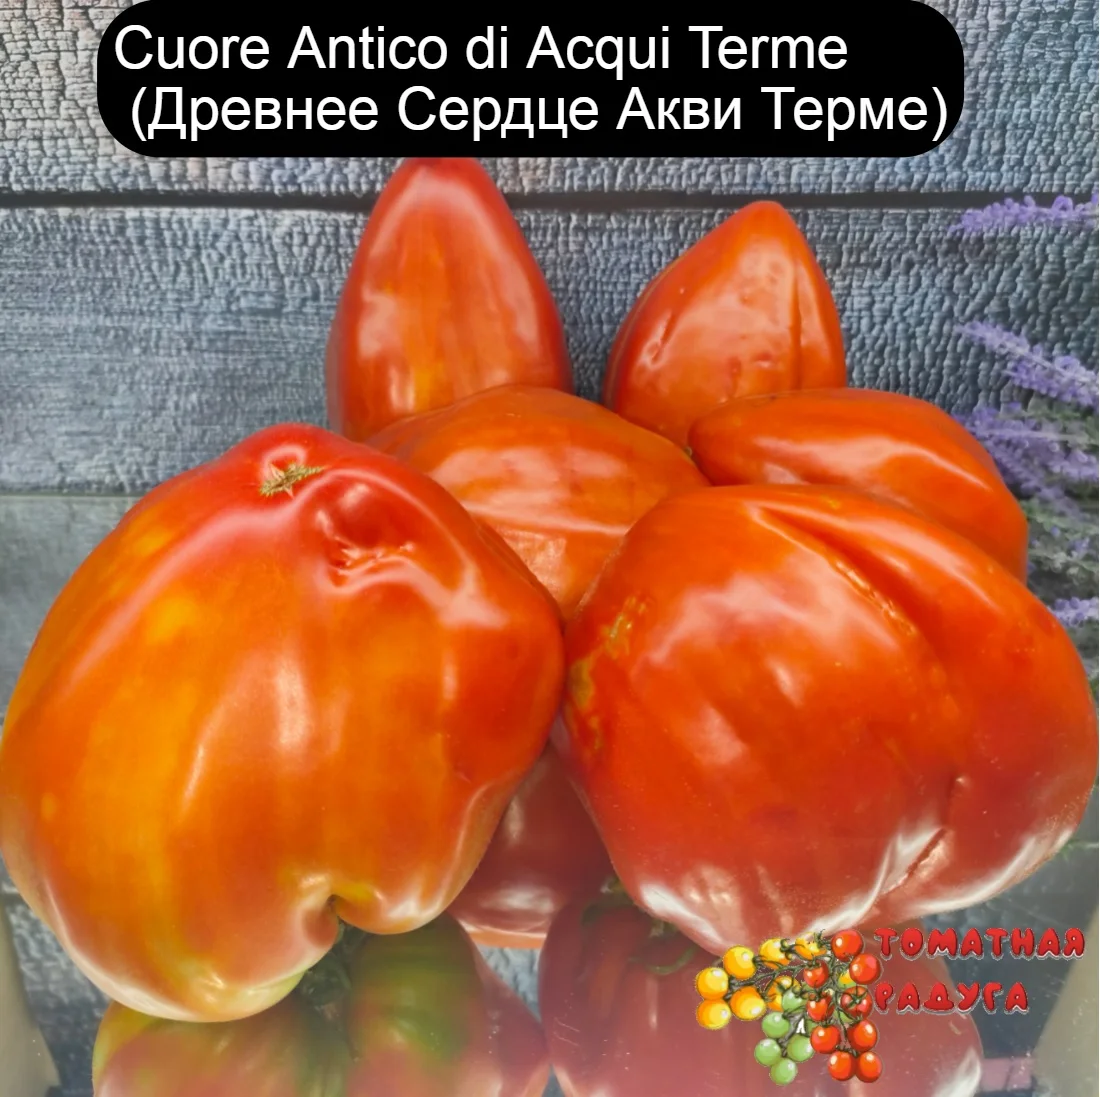 Семена томата сорт Cuore Antico di Acqui Terme (Древнее Сердце Акви Терме)  органические семена помидор | AliExpress